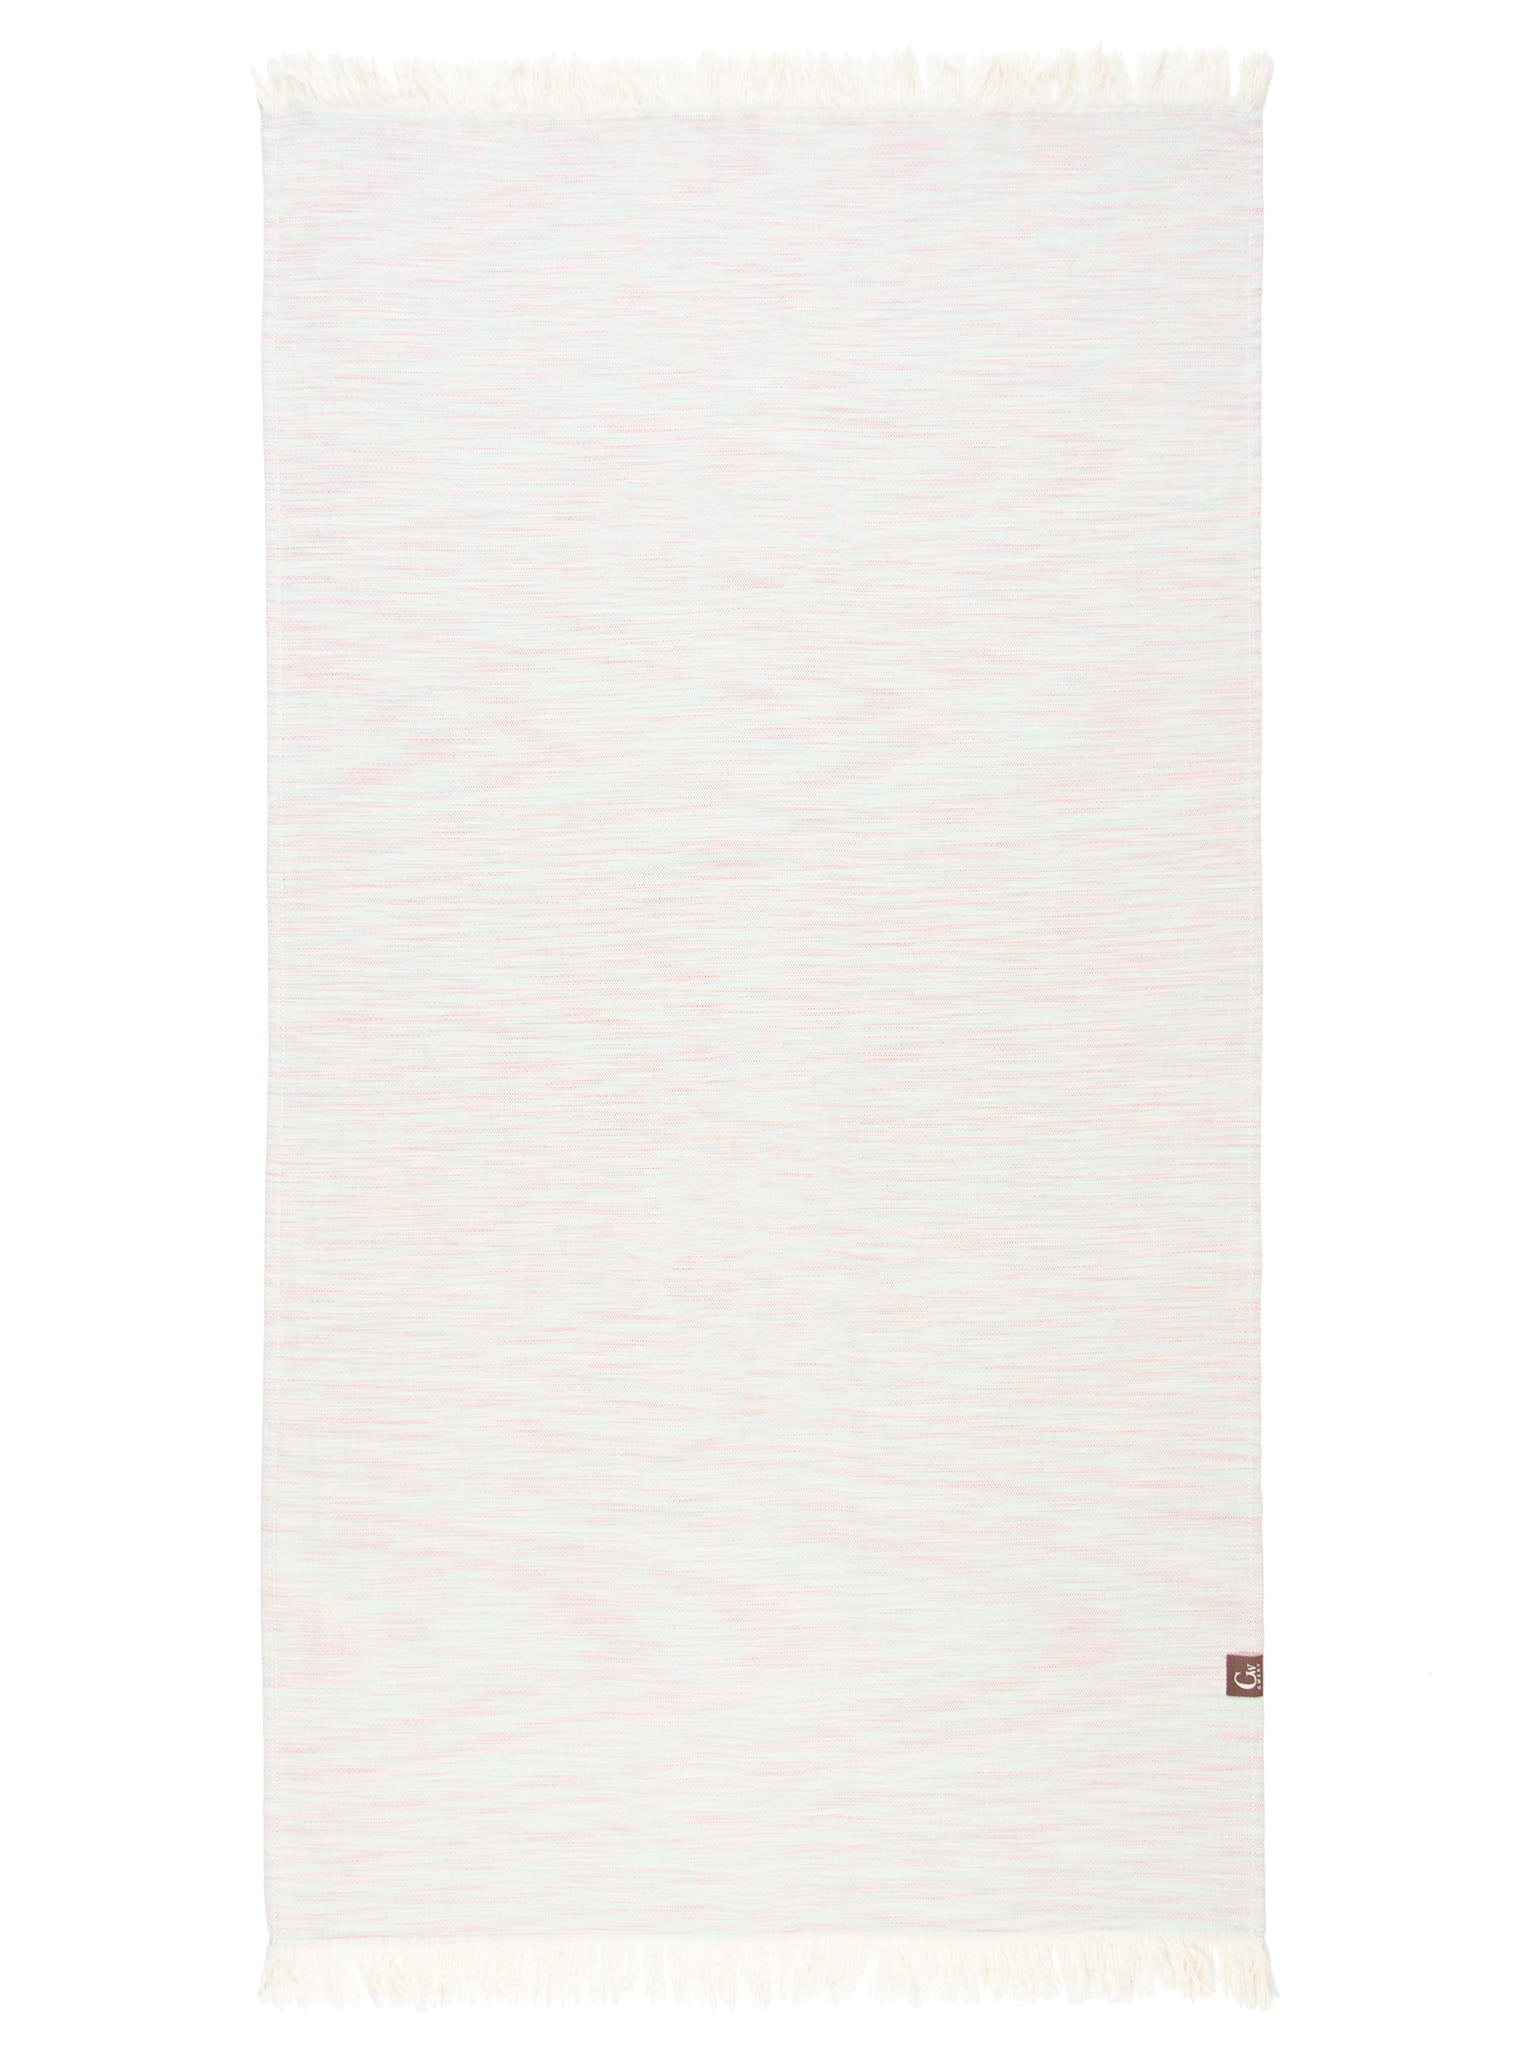 pink patterned lightweight beach towel open up